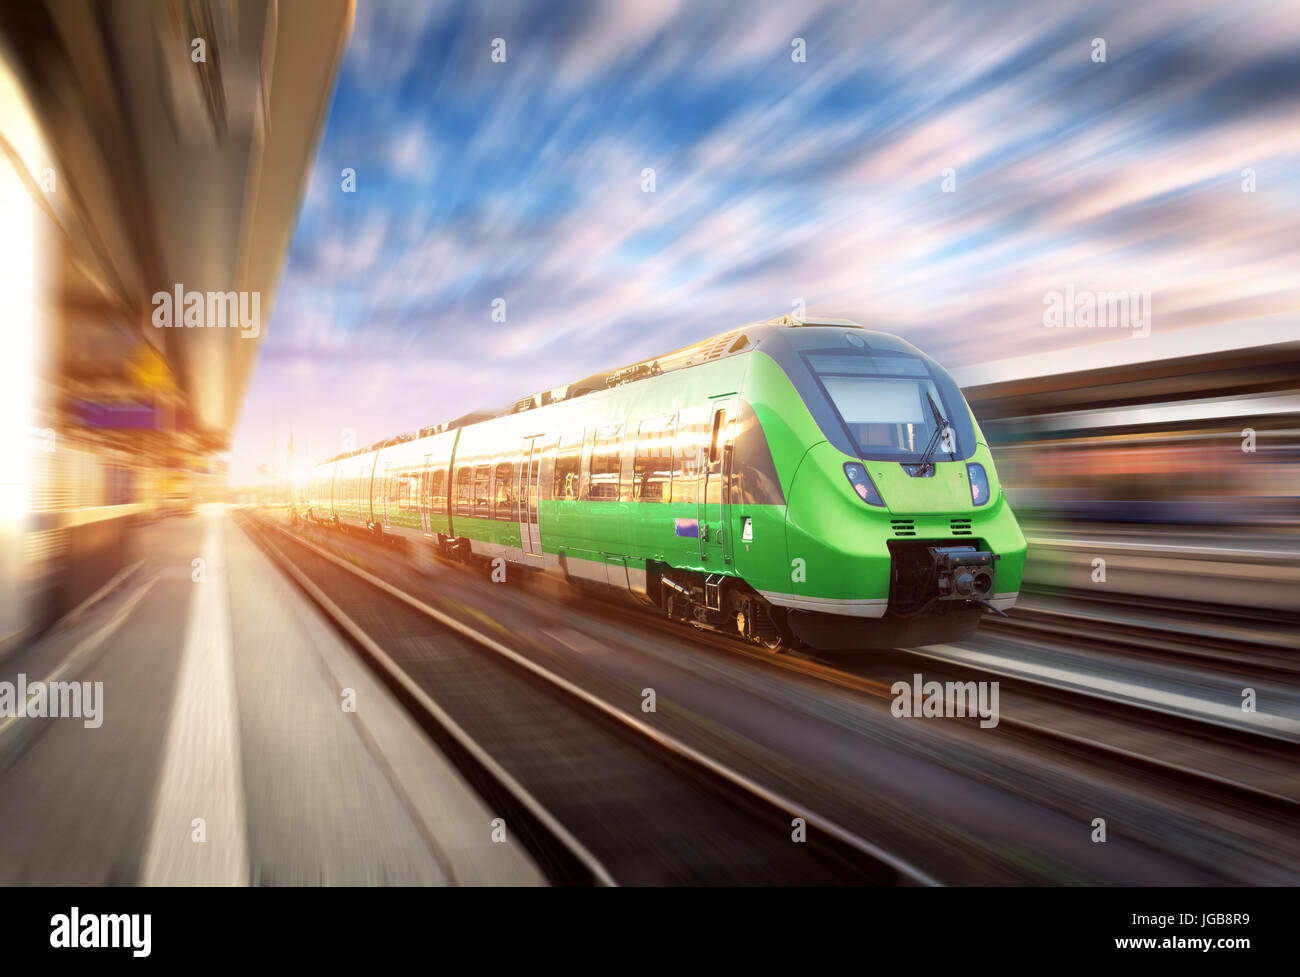 High-Speed-Zug in Bewegung am Bahnhof bei Sonnenuntergang in Europa. Schönen grünen modernen Zug auf dem Bahnsteig mit Motion-Blur-Effekt. Ich Stockfoto